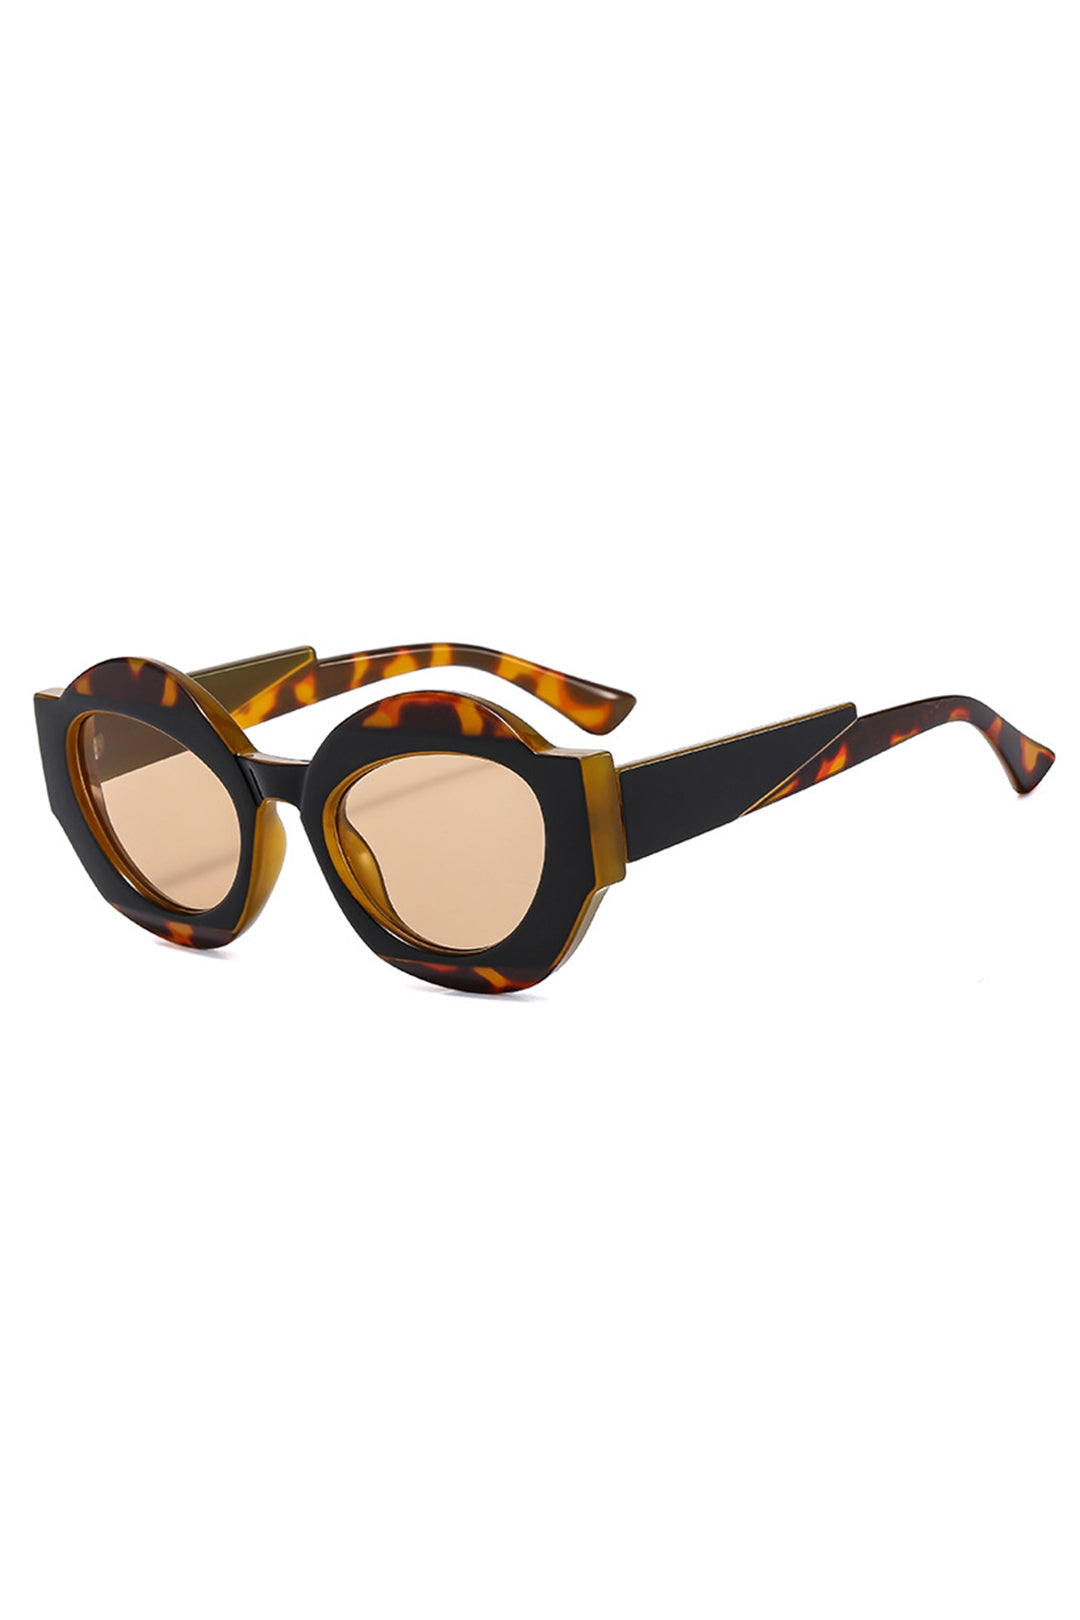 Tortoiseshell Cat Eye Sunglasses